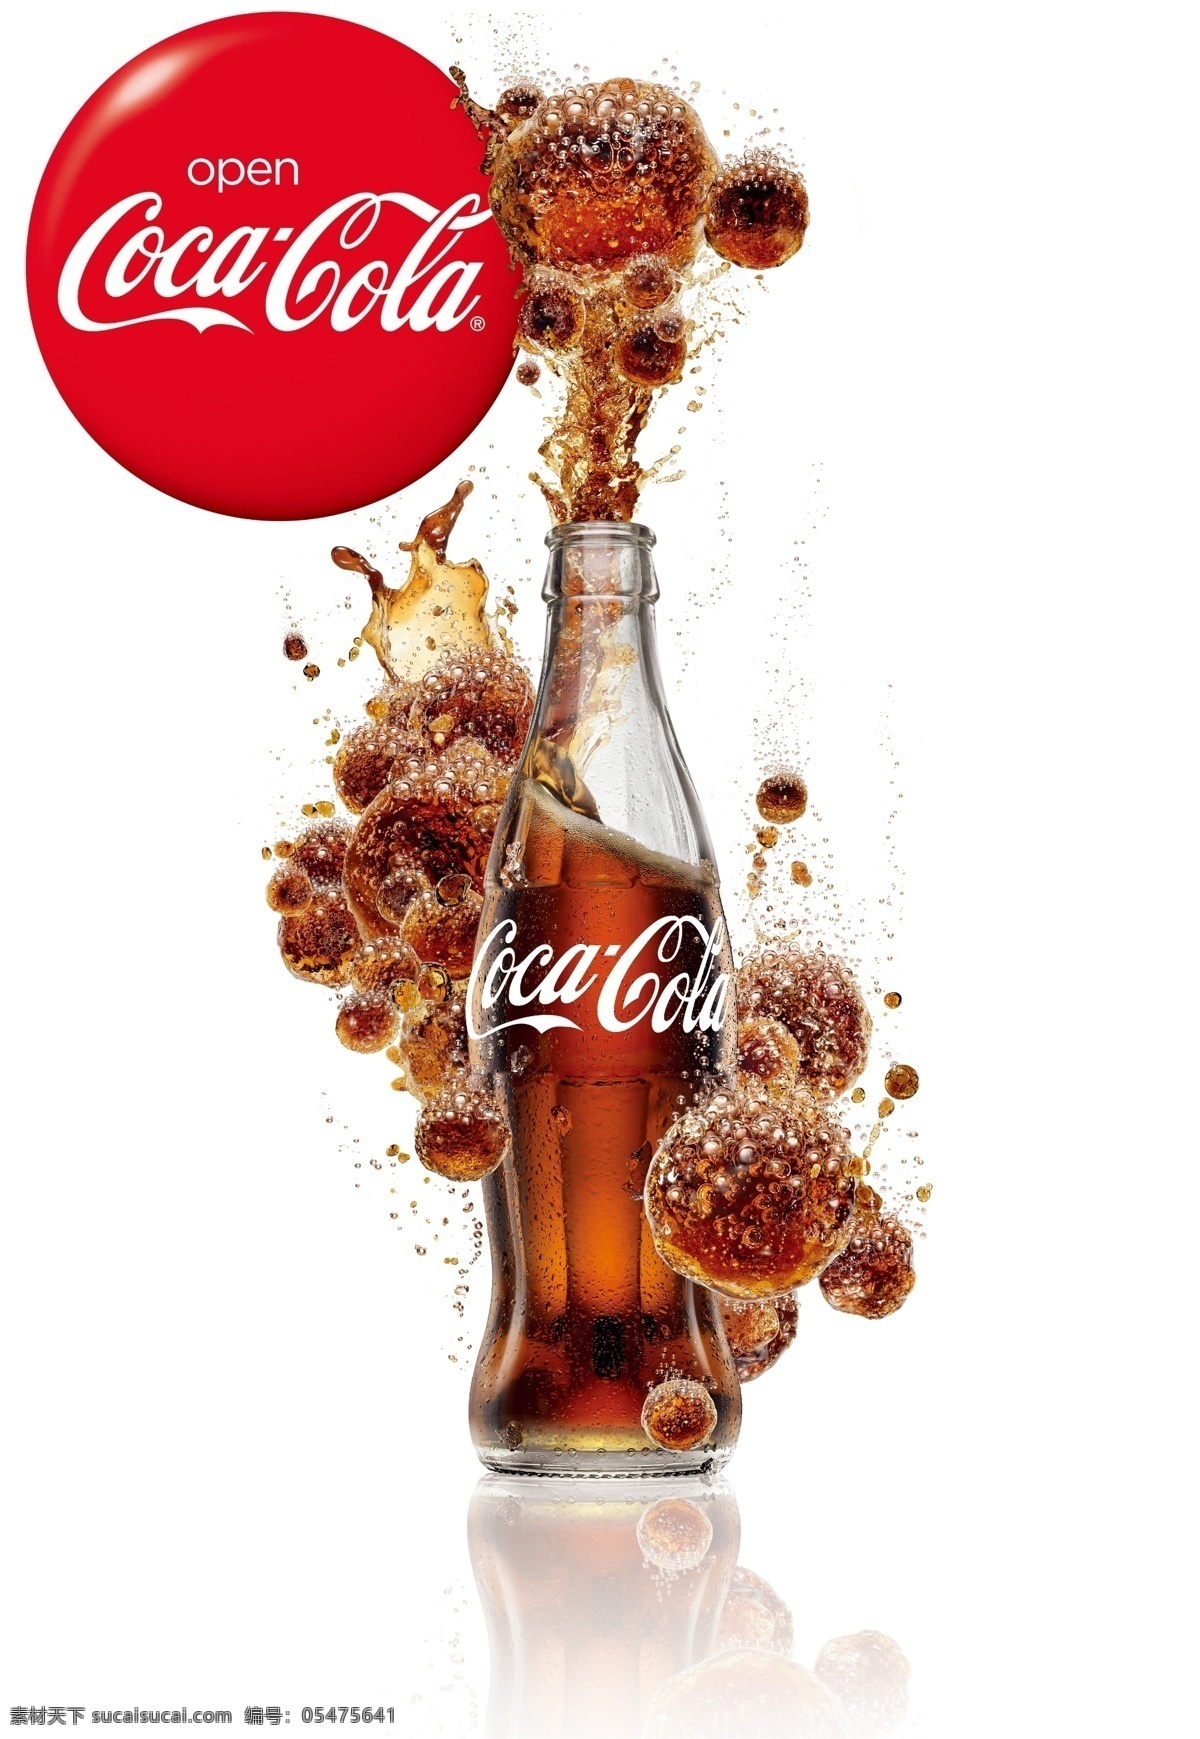 可口可乐04 可口可乐 可口可乐海报 可口可乐招贴 宣传海报设计 宣传海报 气泡饮料 碳酸饮料 饮料海报设计 饮料宣传 瓶装可乐 可乐 白色